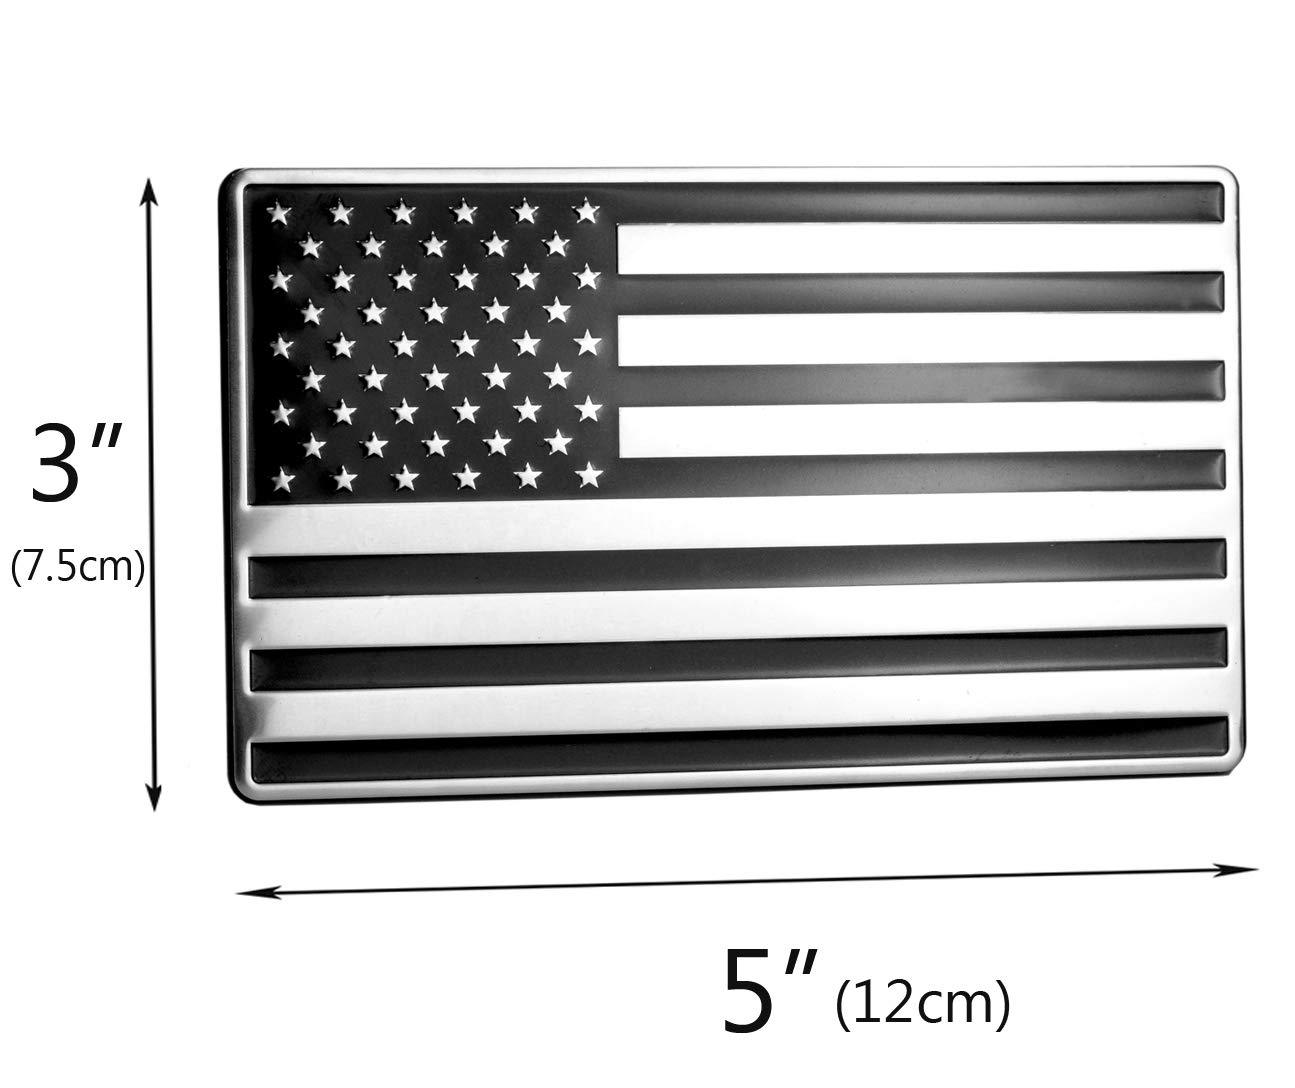 USA Black/Chrome Aluminum Flag Emblem for Cars, Trucks Laptop 5"x 3" 2pcs Forward and Reverse Set